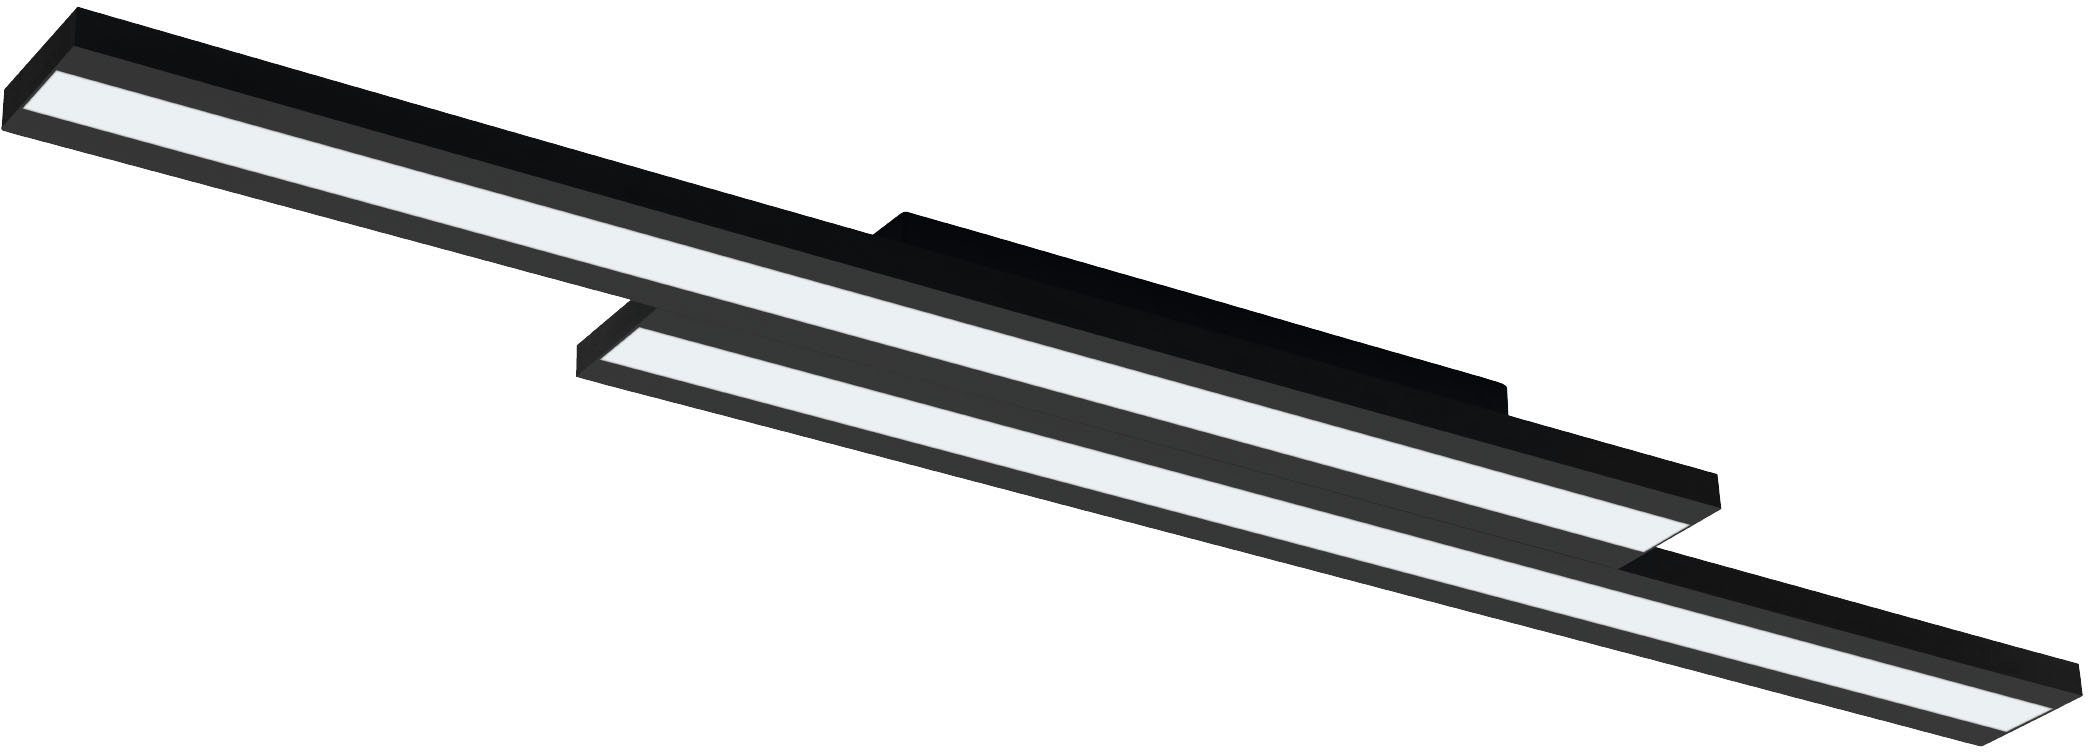 EGLO Deckenleuchte SALITERAS-Z, kaltweiß fest in aus - Deckenleuchte LED warmweiß 10,2W - - schwarz warmweiß integriert, Stahl kaltweiß, 